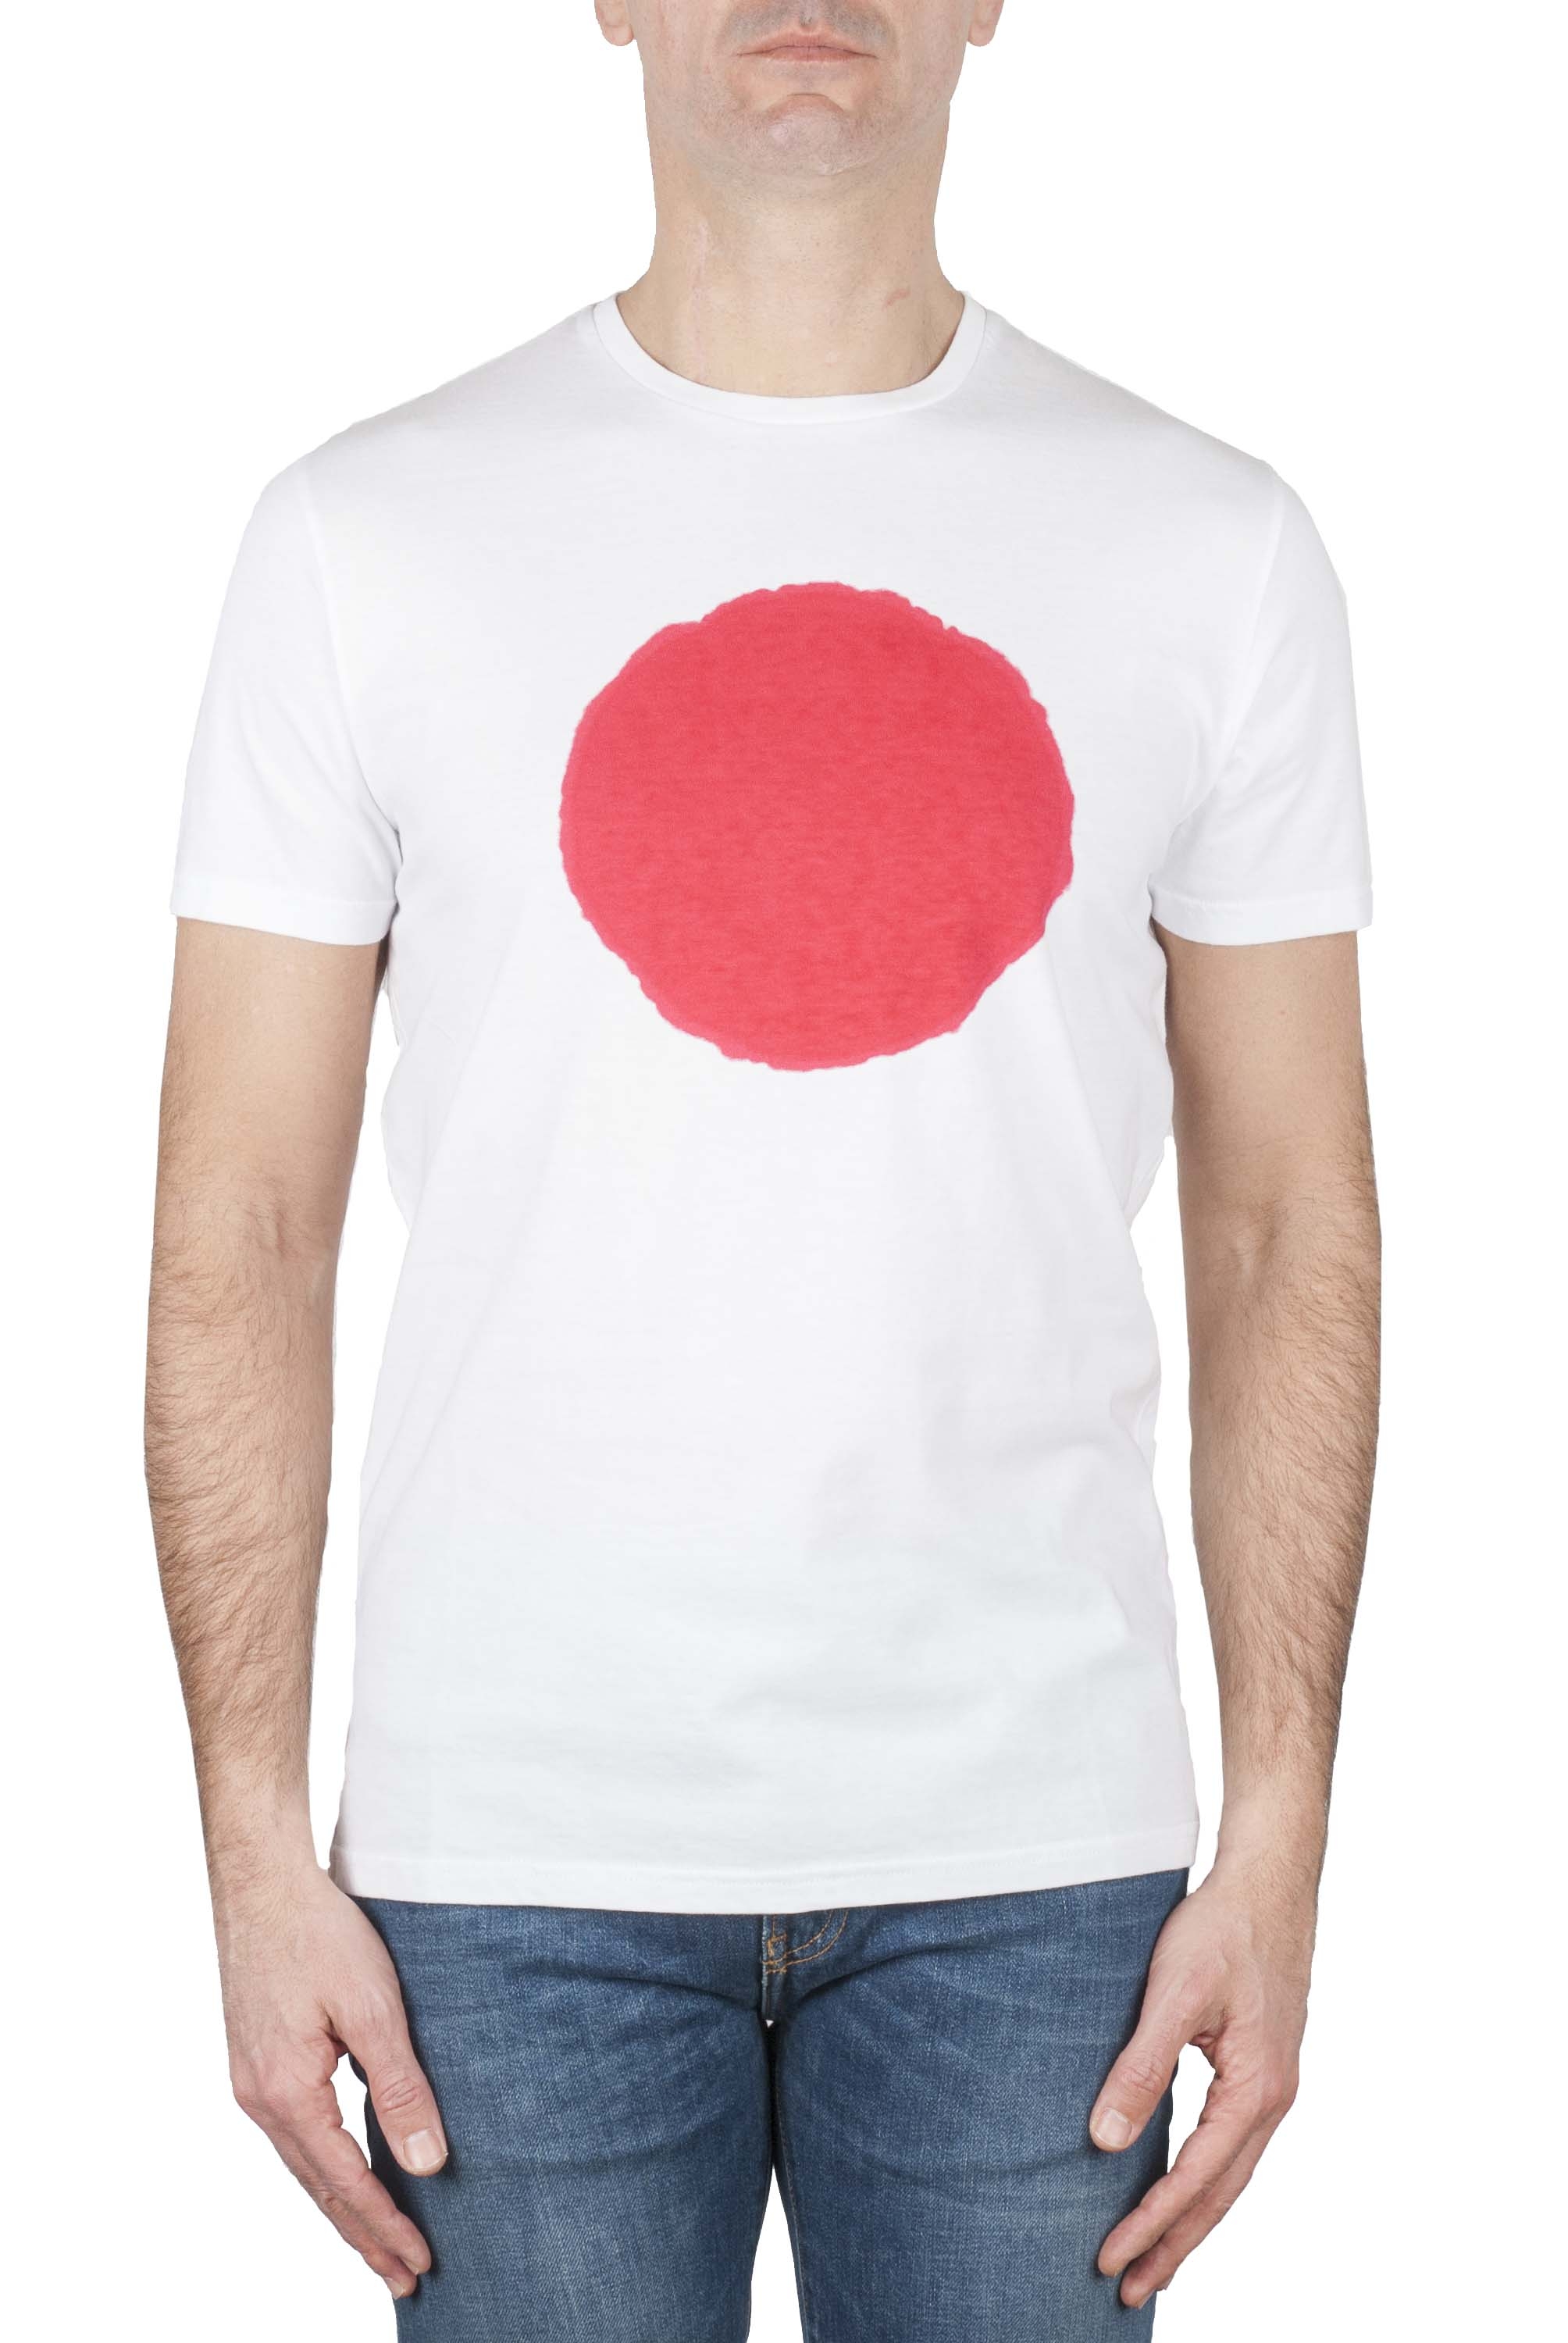 SBU 01170 Shirt classique rouge et blanche col rond manches courtes en coton graphique imprimé 01